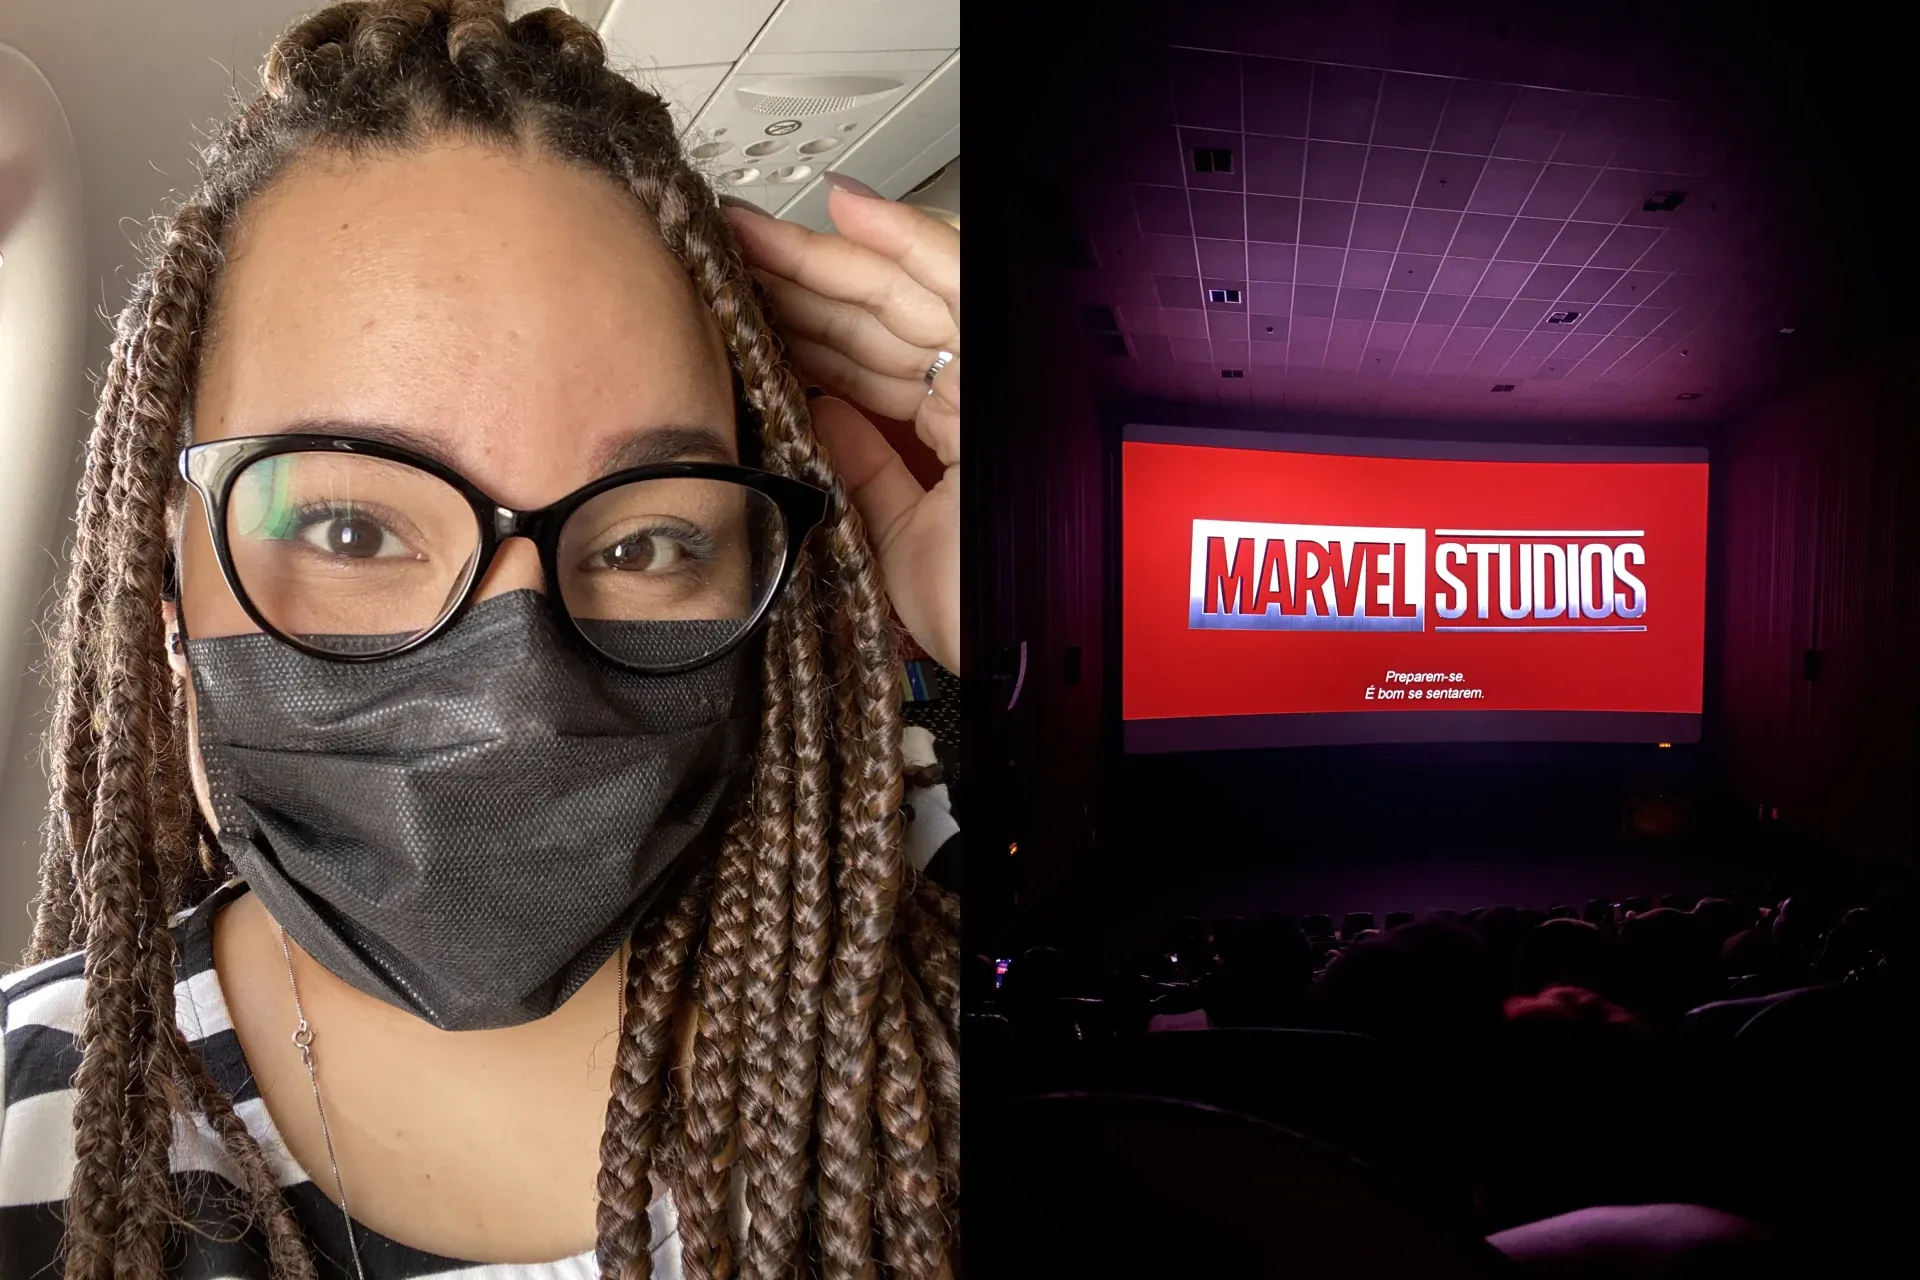 Selfie de mulher negra usando tranças castanhas e óculos com armação preta e máscara ao lado da tela do cinema com o logo da Marvel Studios